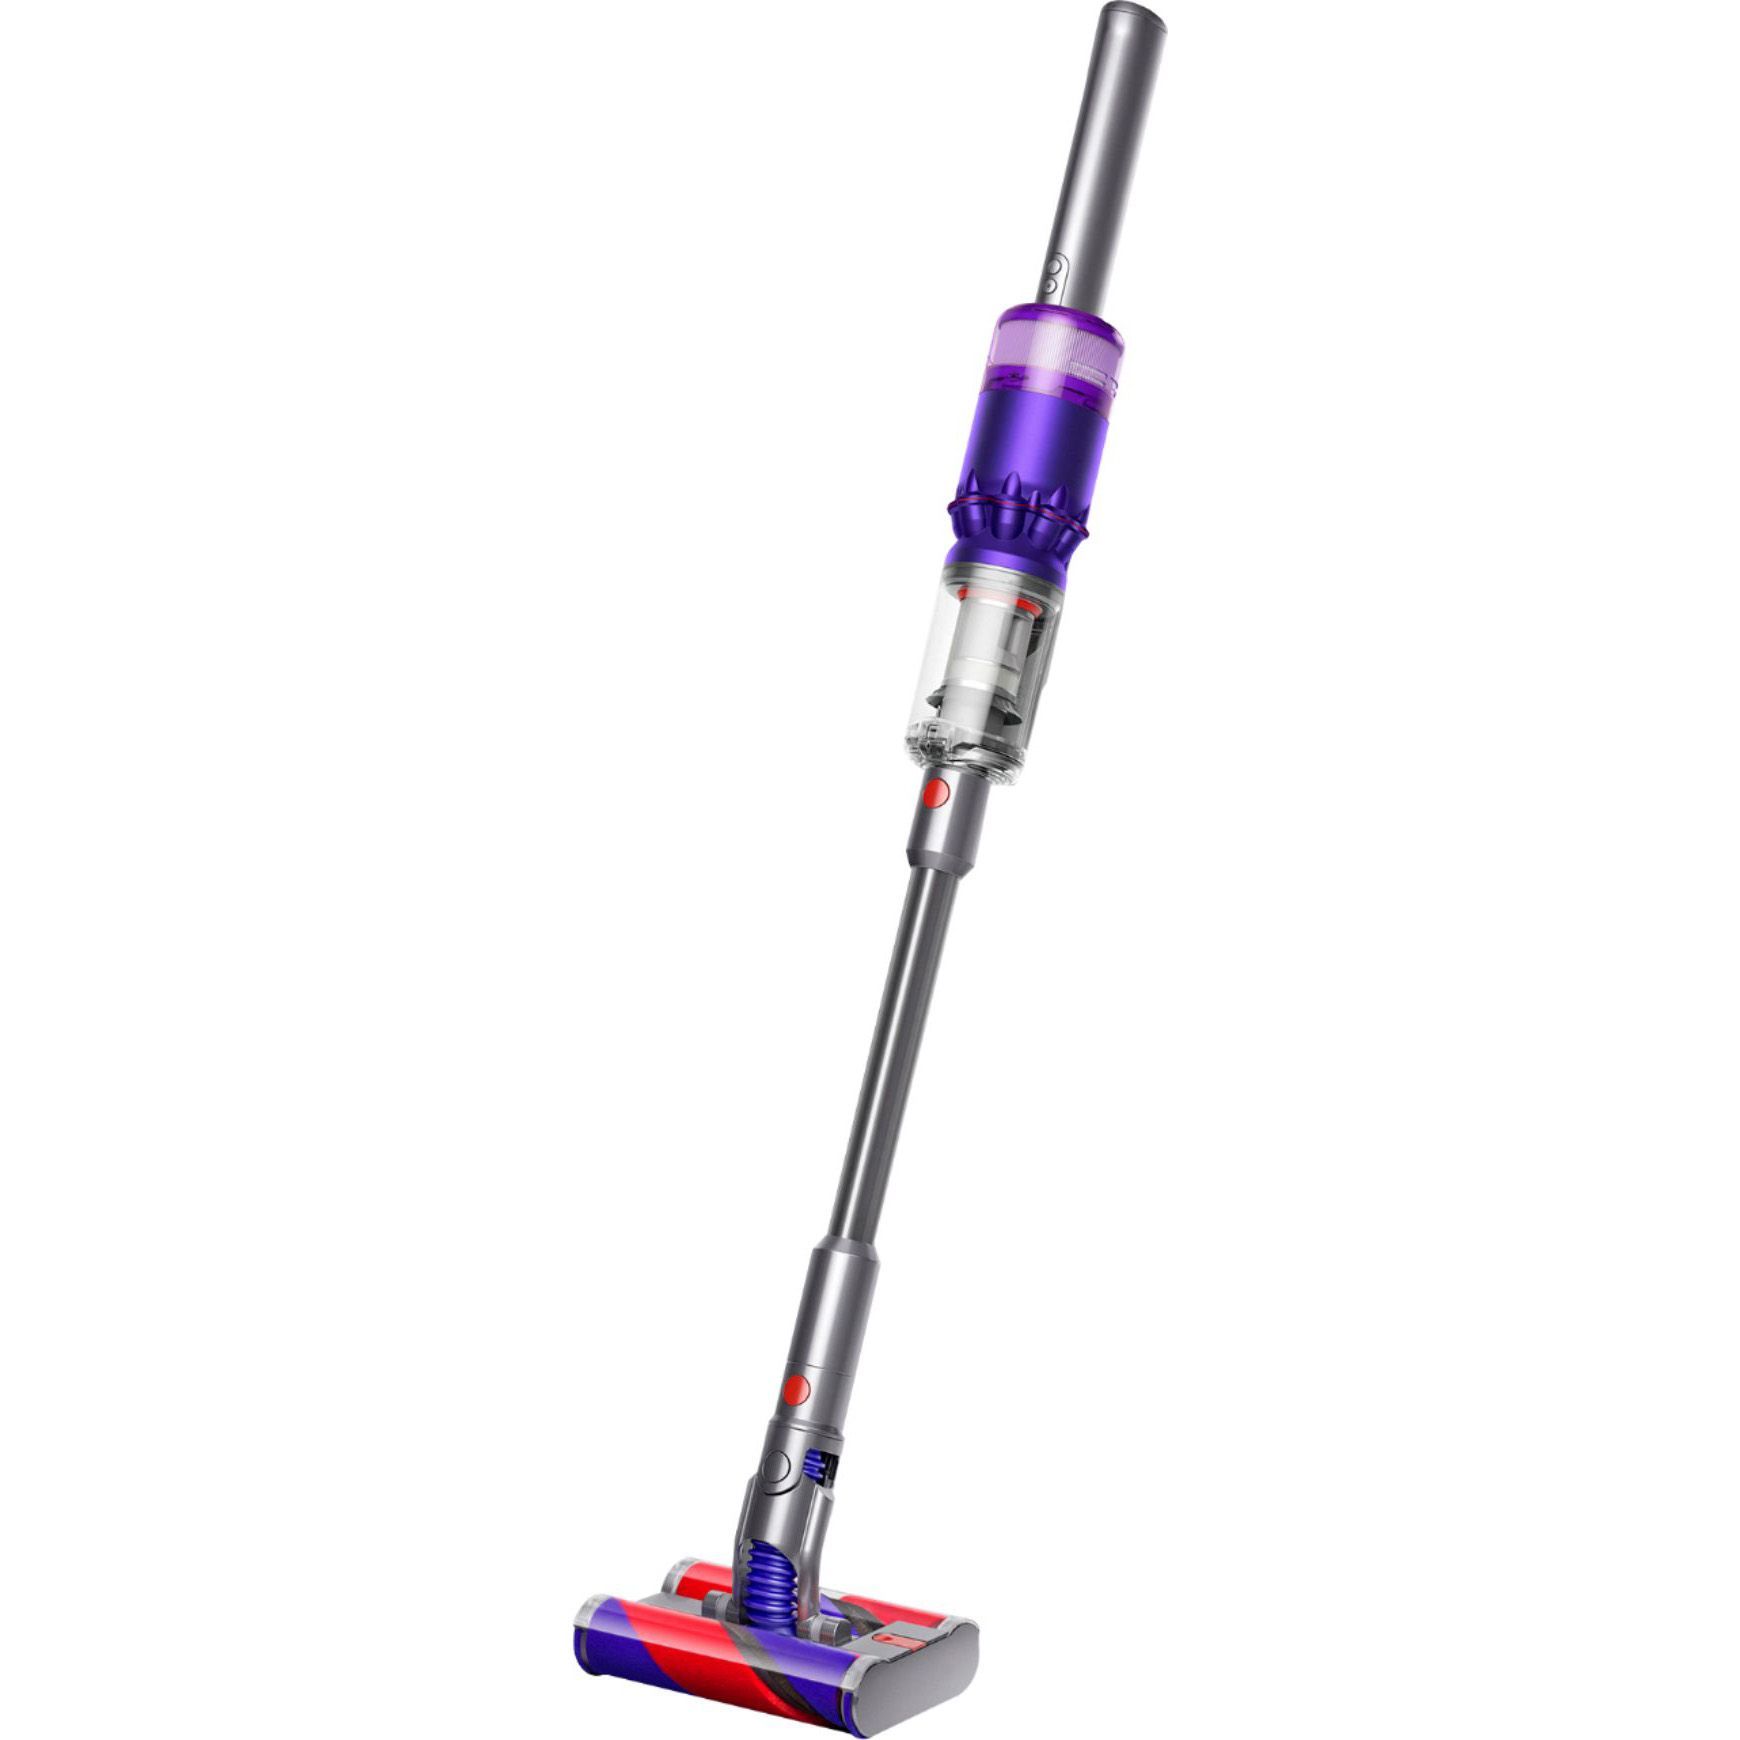 Omni-Glide Cordless Vacuum Cleaner